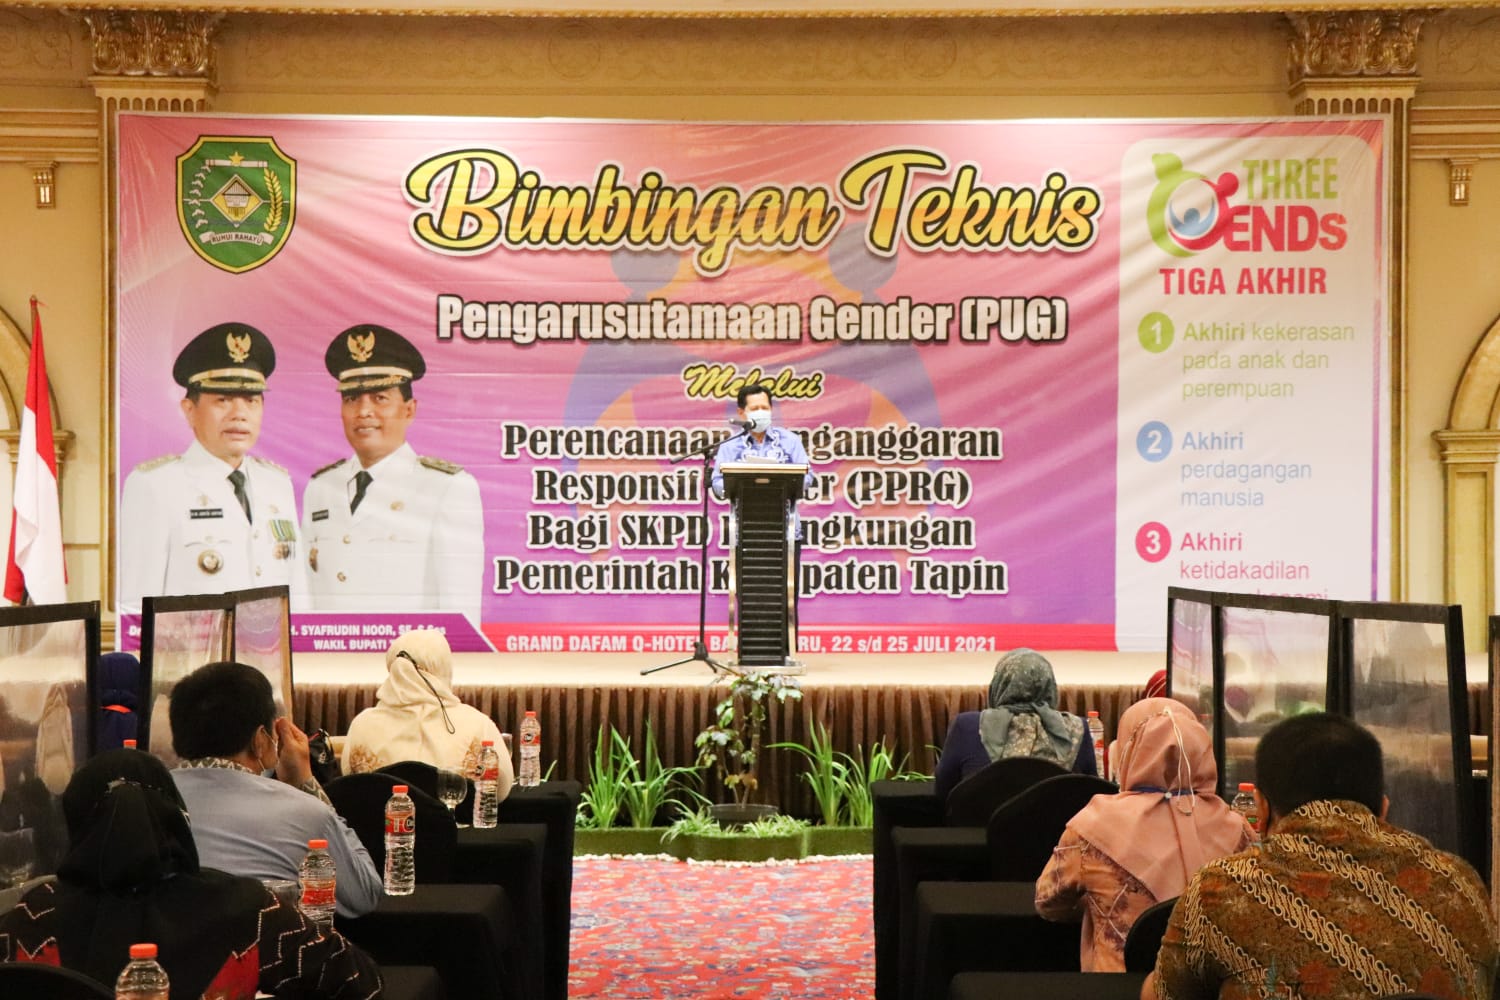 Bintek Perencanaan penganggaran Responsif Gender (PPRG) Kab. Tapin